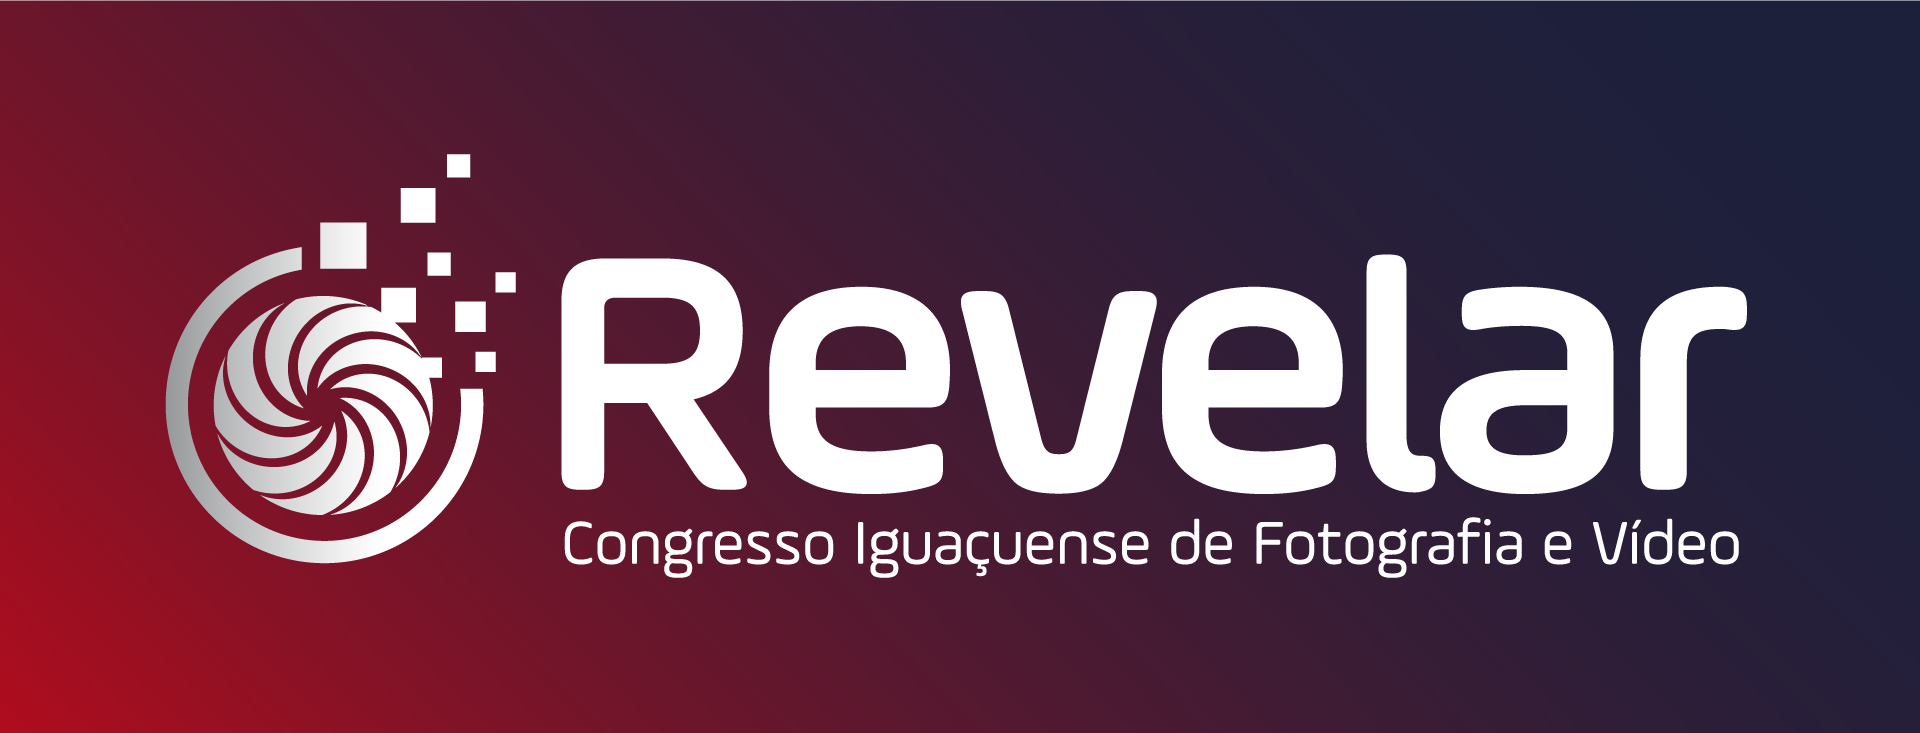 Logo-Revelar-BR-1